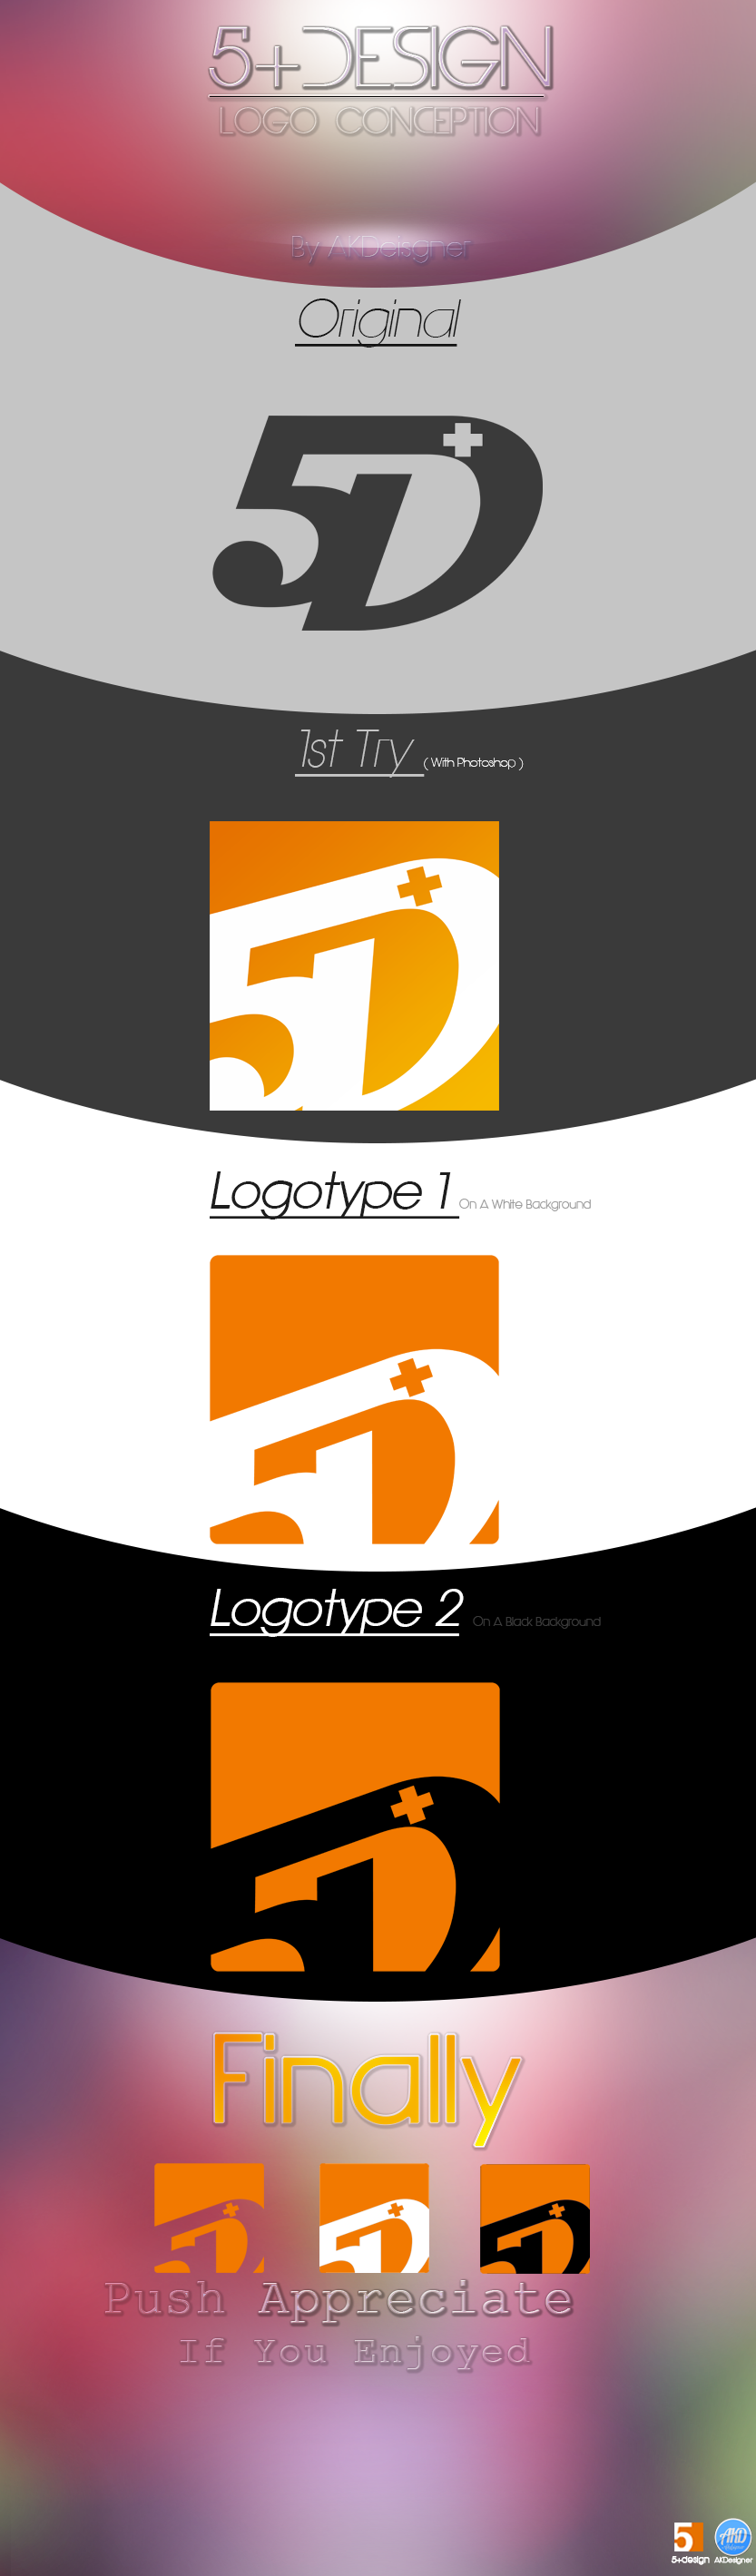 5+design 5+designs alaakhassa akdesigner 5design 5designs logo logomaker free logo logos loggo che3ar 5+design.com flat flatui